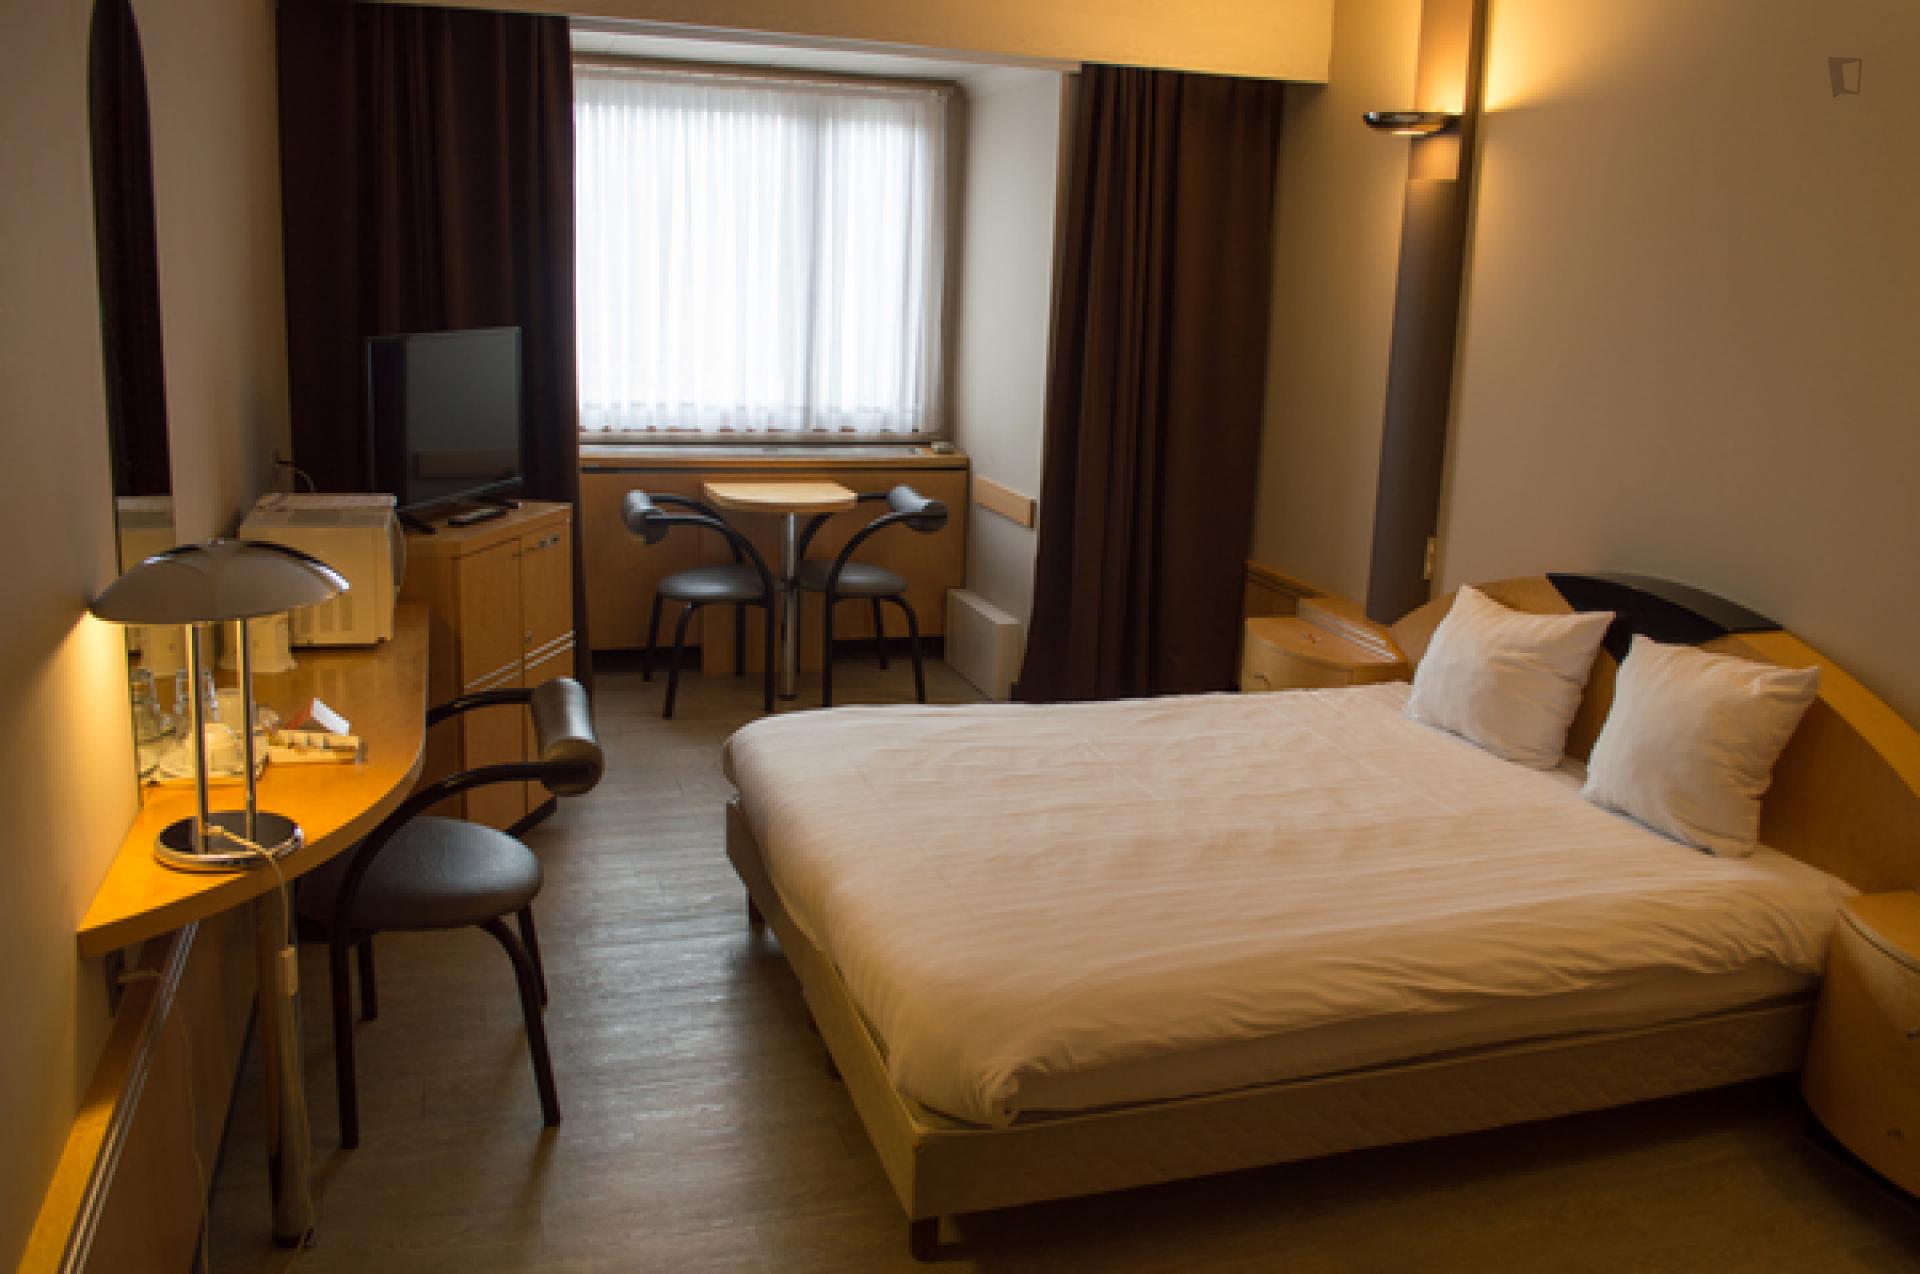 Waterloosesteenweg 2- Bedroom in shared flat in Belgium